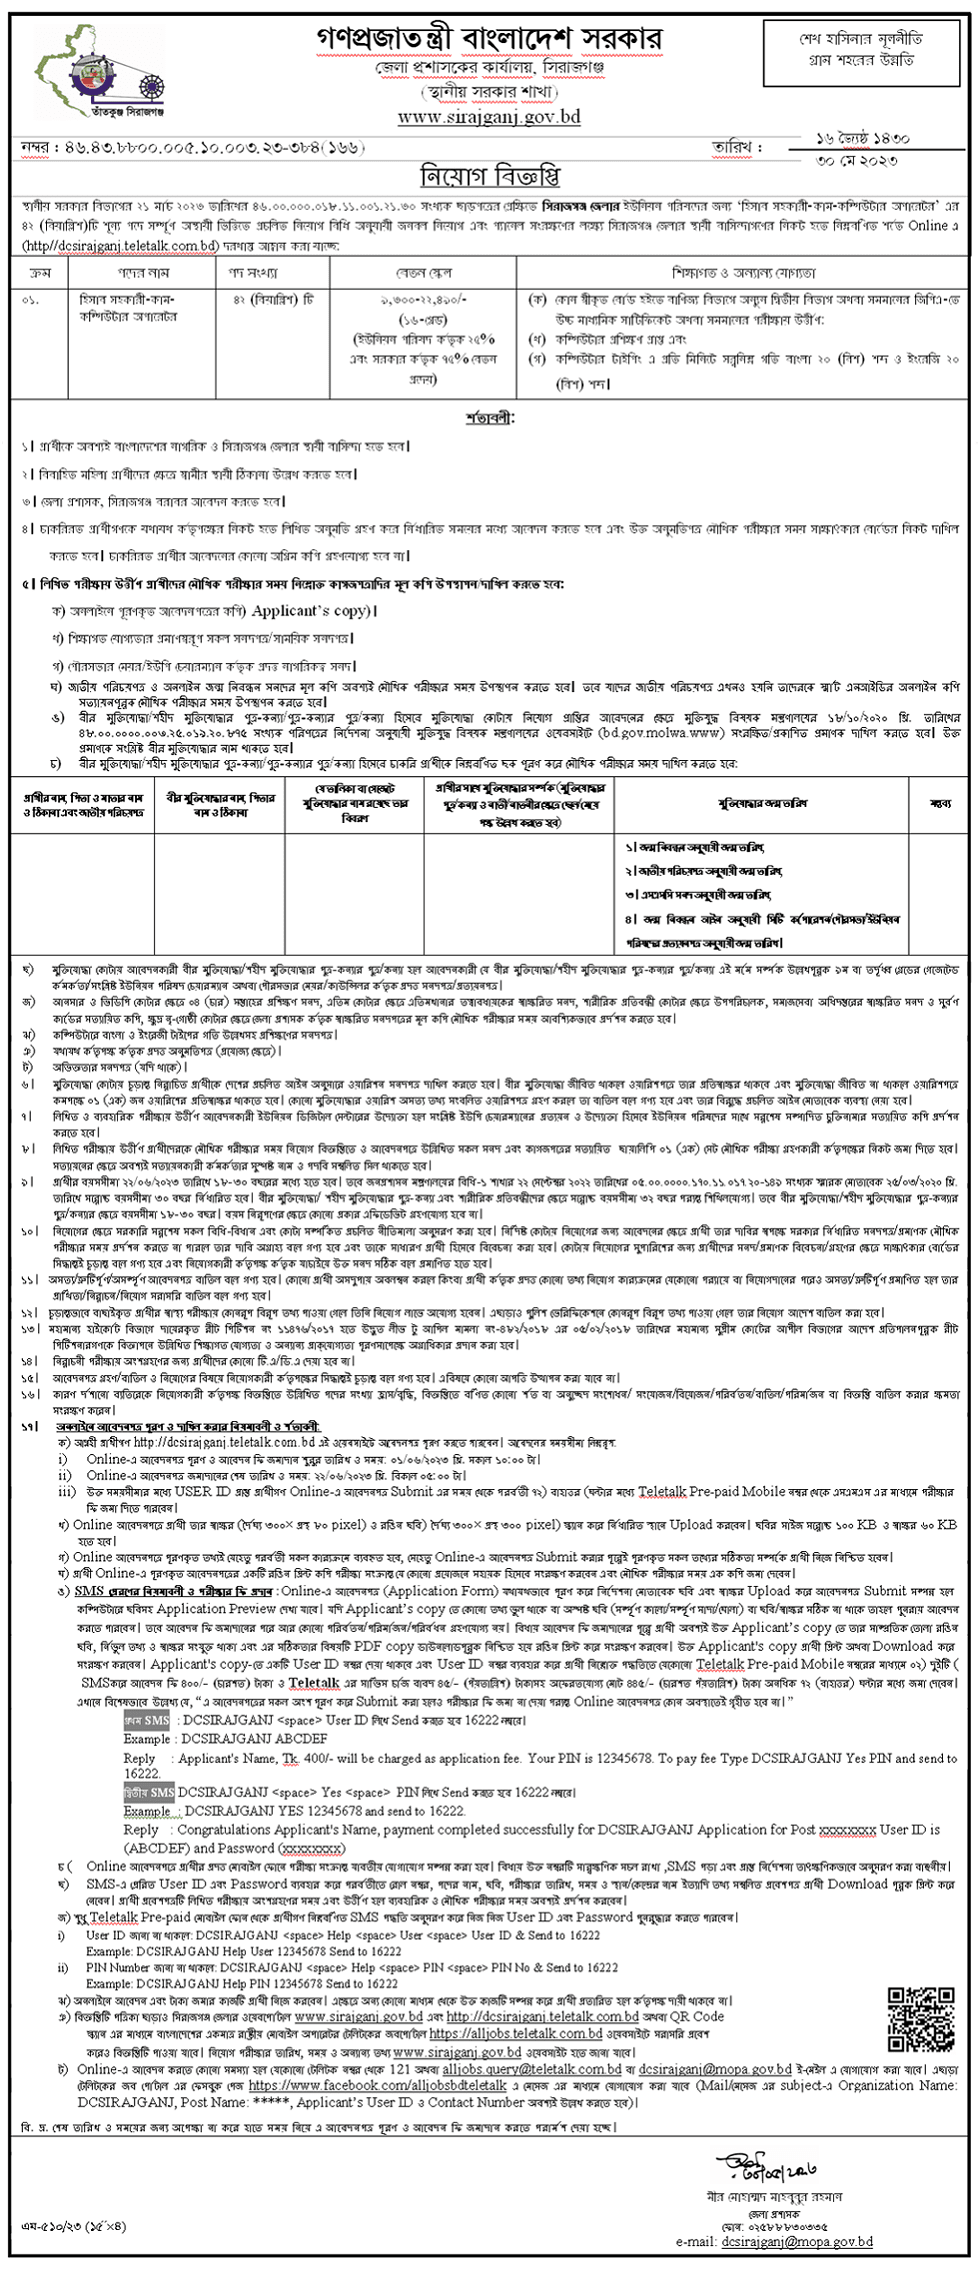 জেলা প্রশাসকের কার্যালয়ে নিয়োগ বিজ্ঞপ্তি ২০২৩ | Recruitment Circular 2023 in District Commissioner's Office